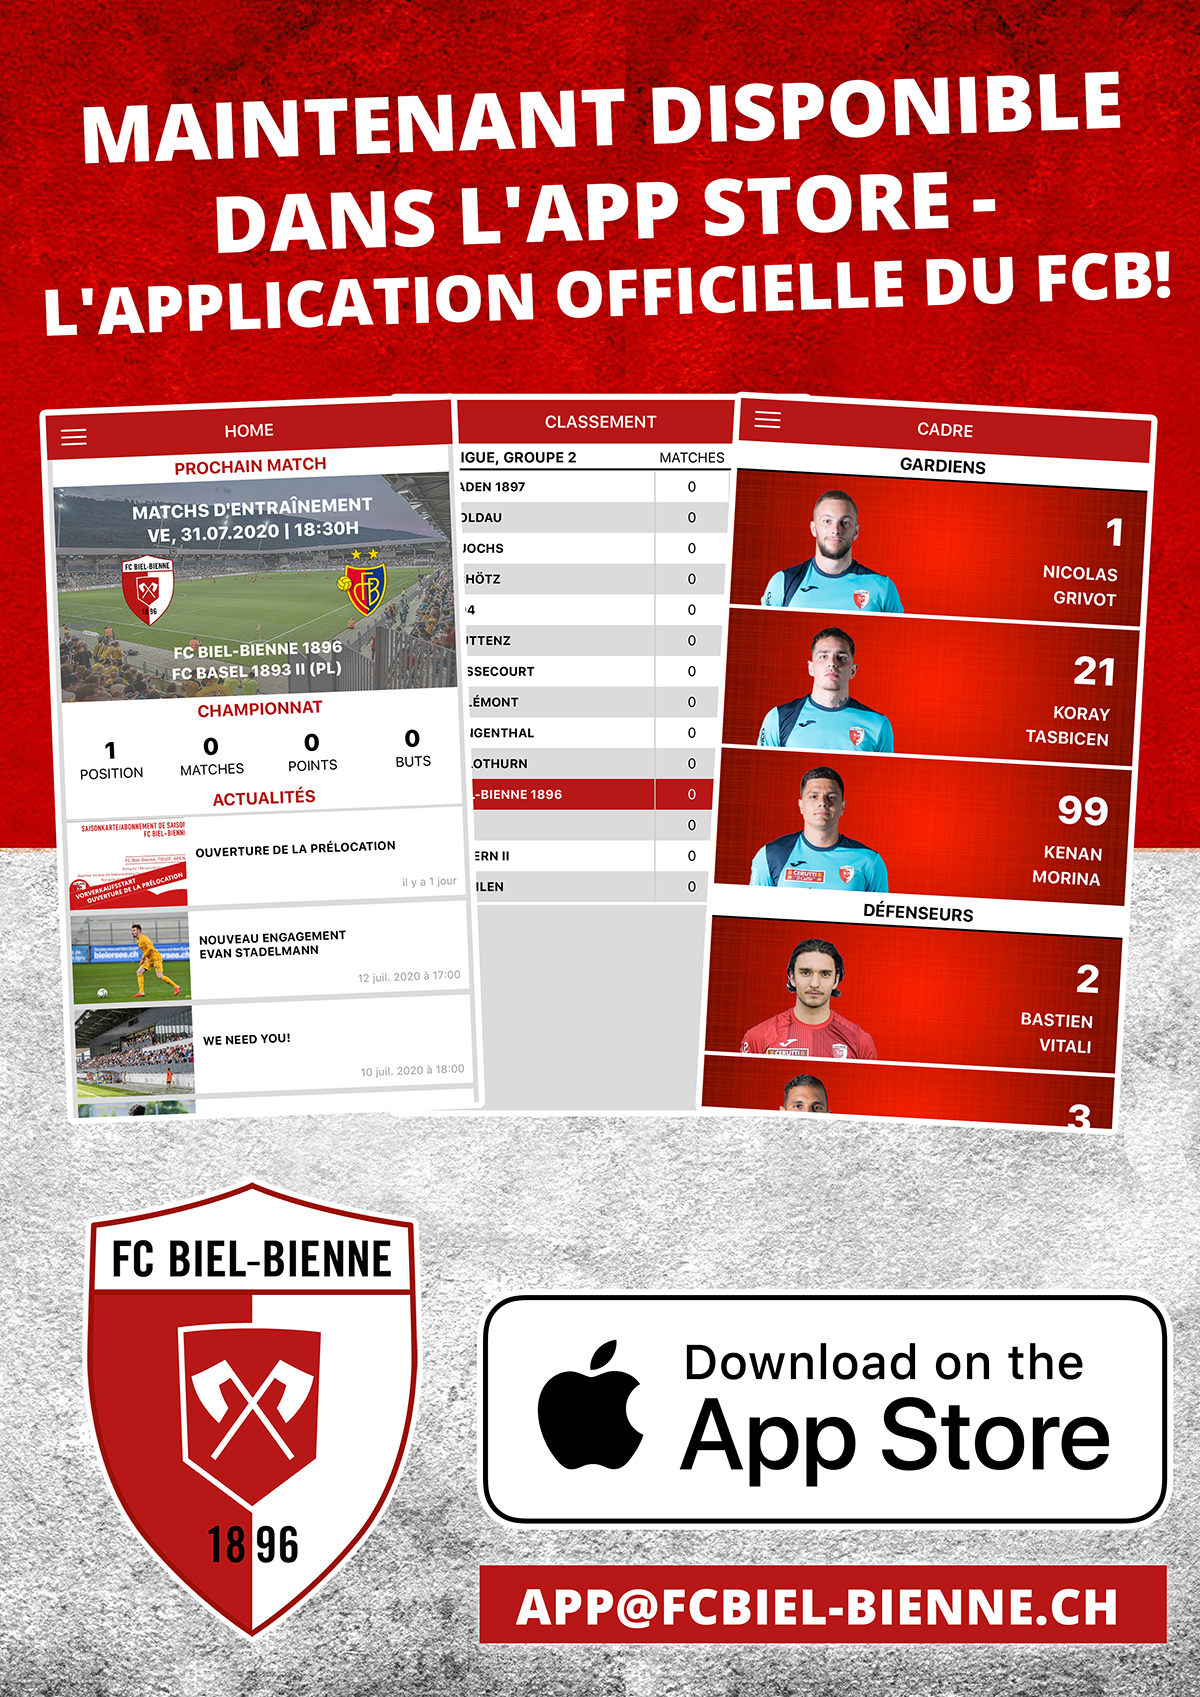 L'application officielle du FCB!